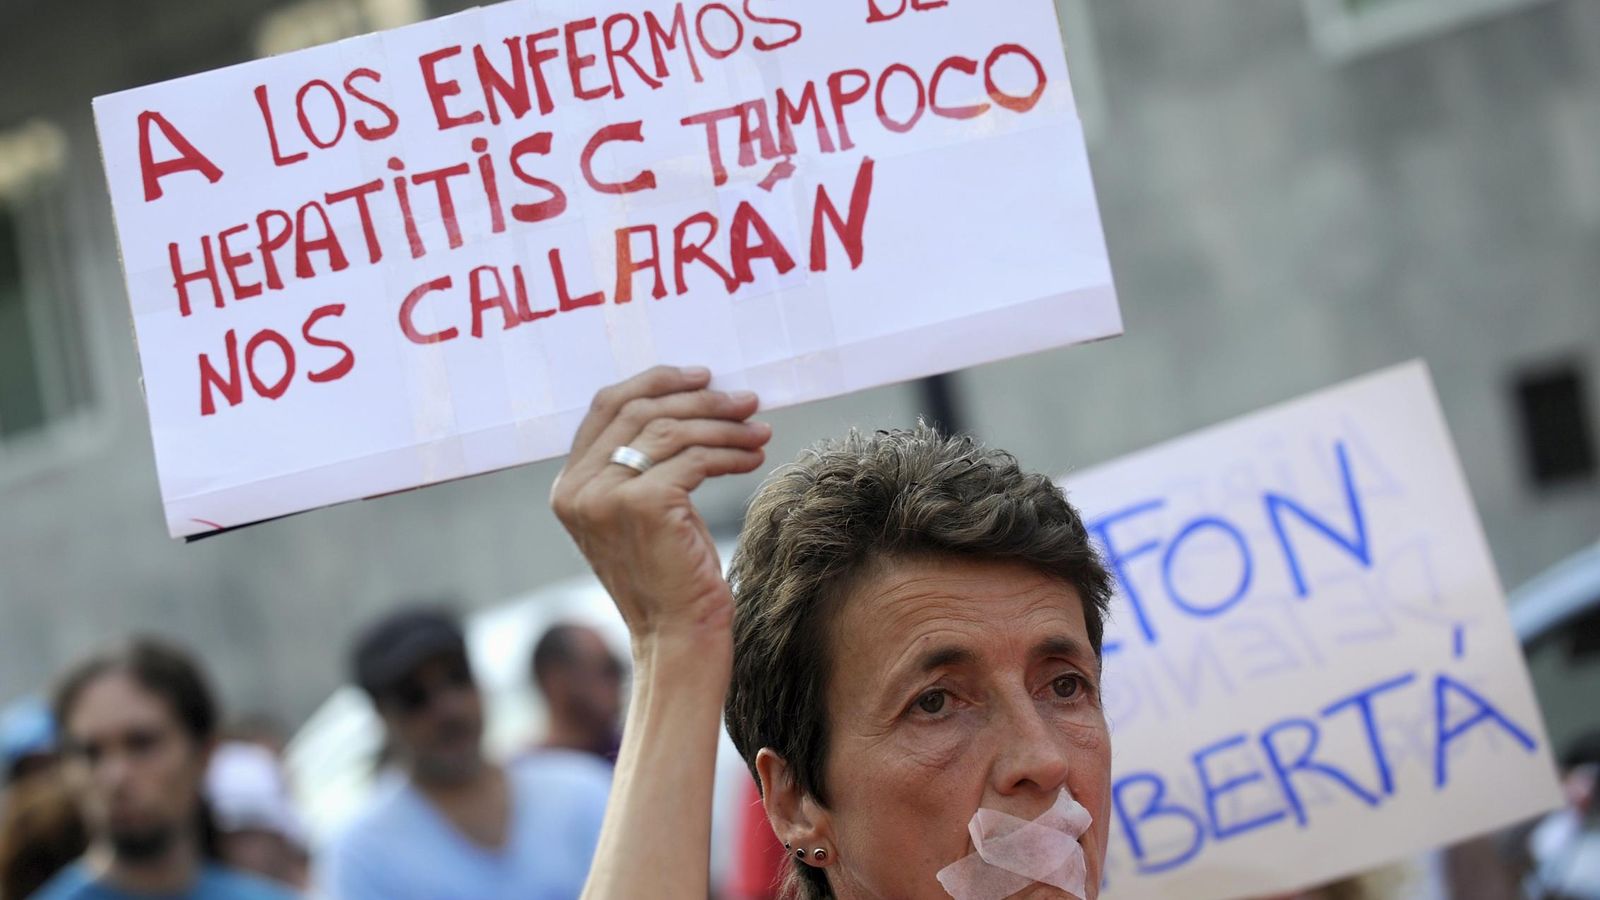 Foto: Protestas de los enfermos de hepatitis C en junio de este año (Reuters)